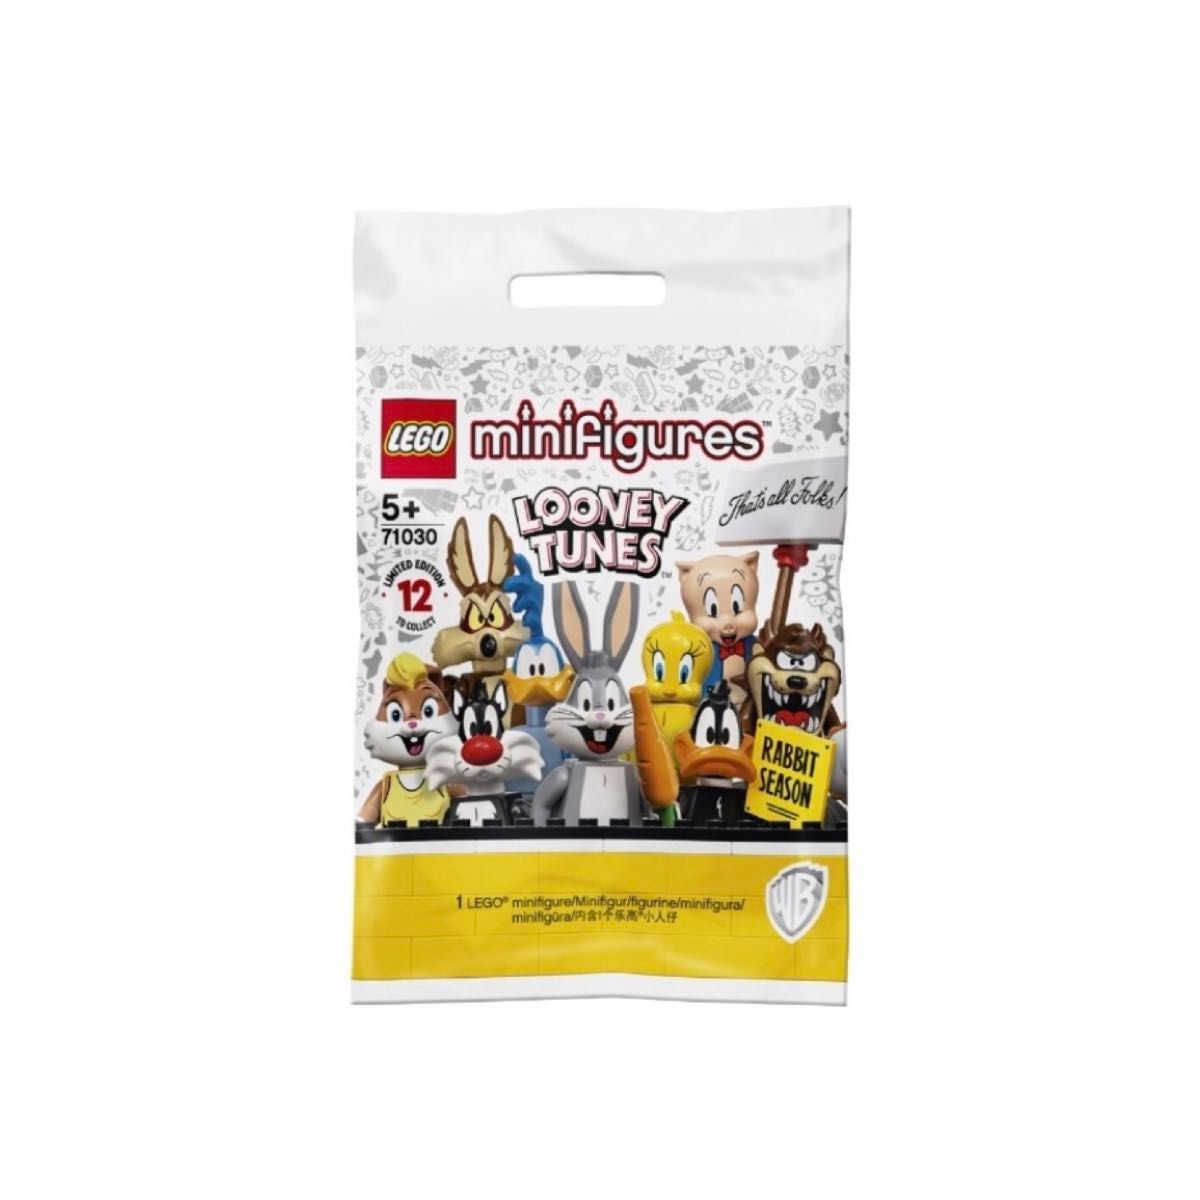 レゴ(LEGO) ミニフィギュア ルーニー・テューンズ シリーズ タズマニアン・デビル マービン・ザ・マーシャン 2点セット